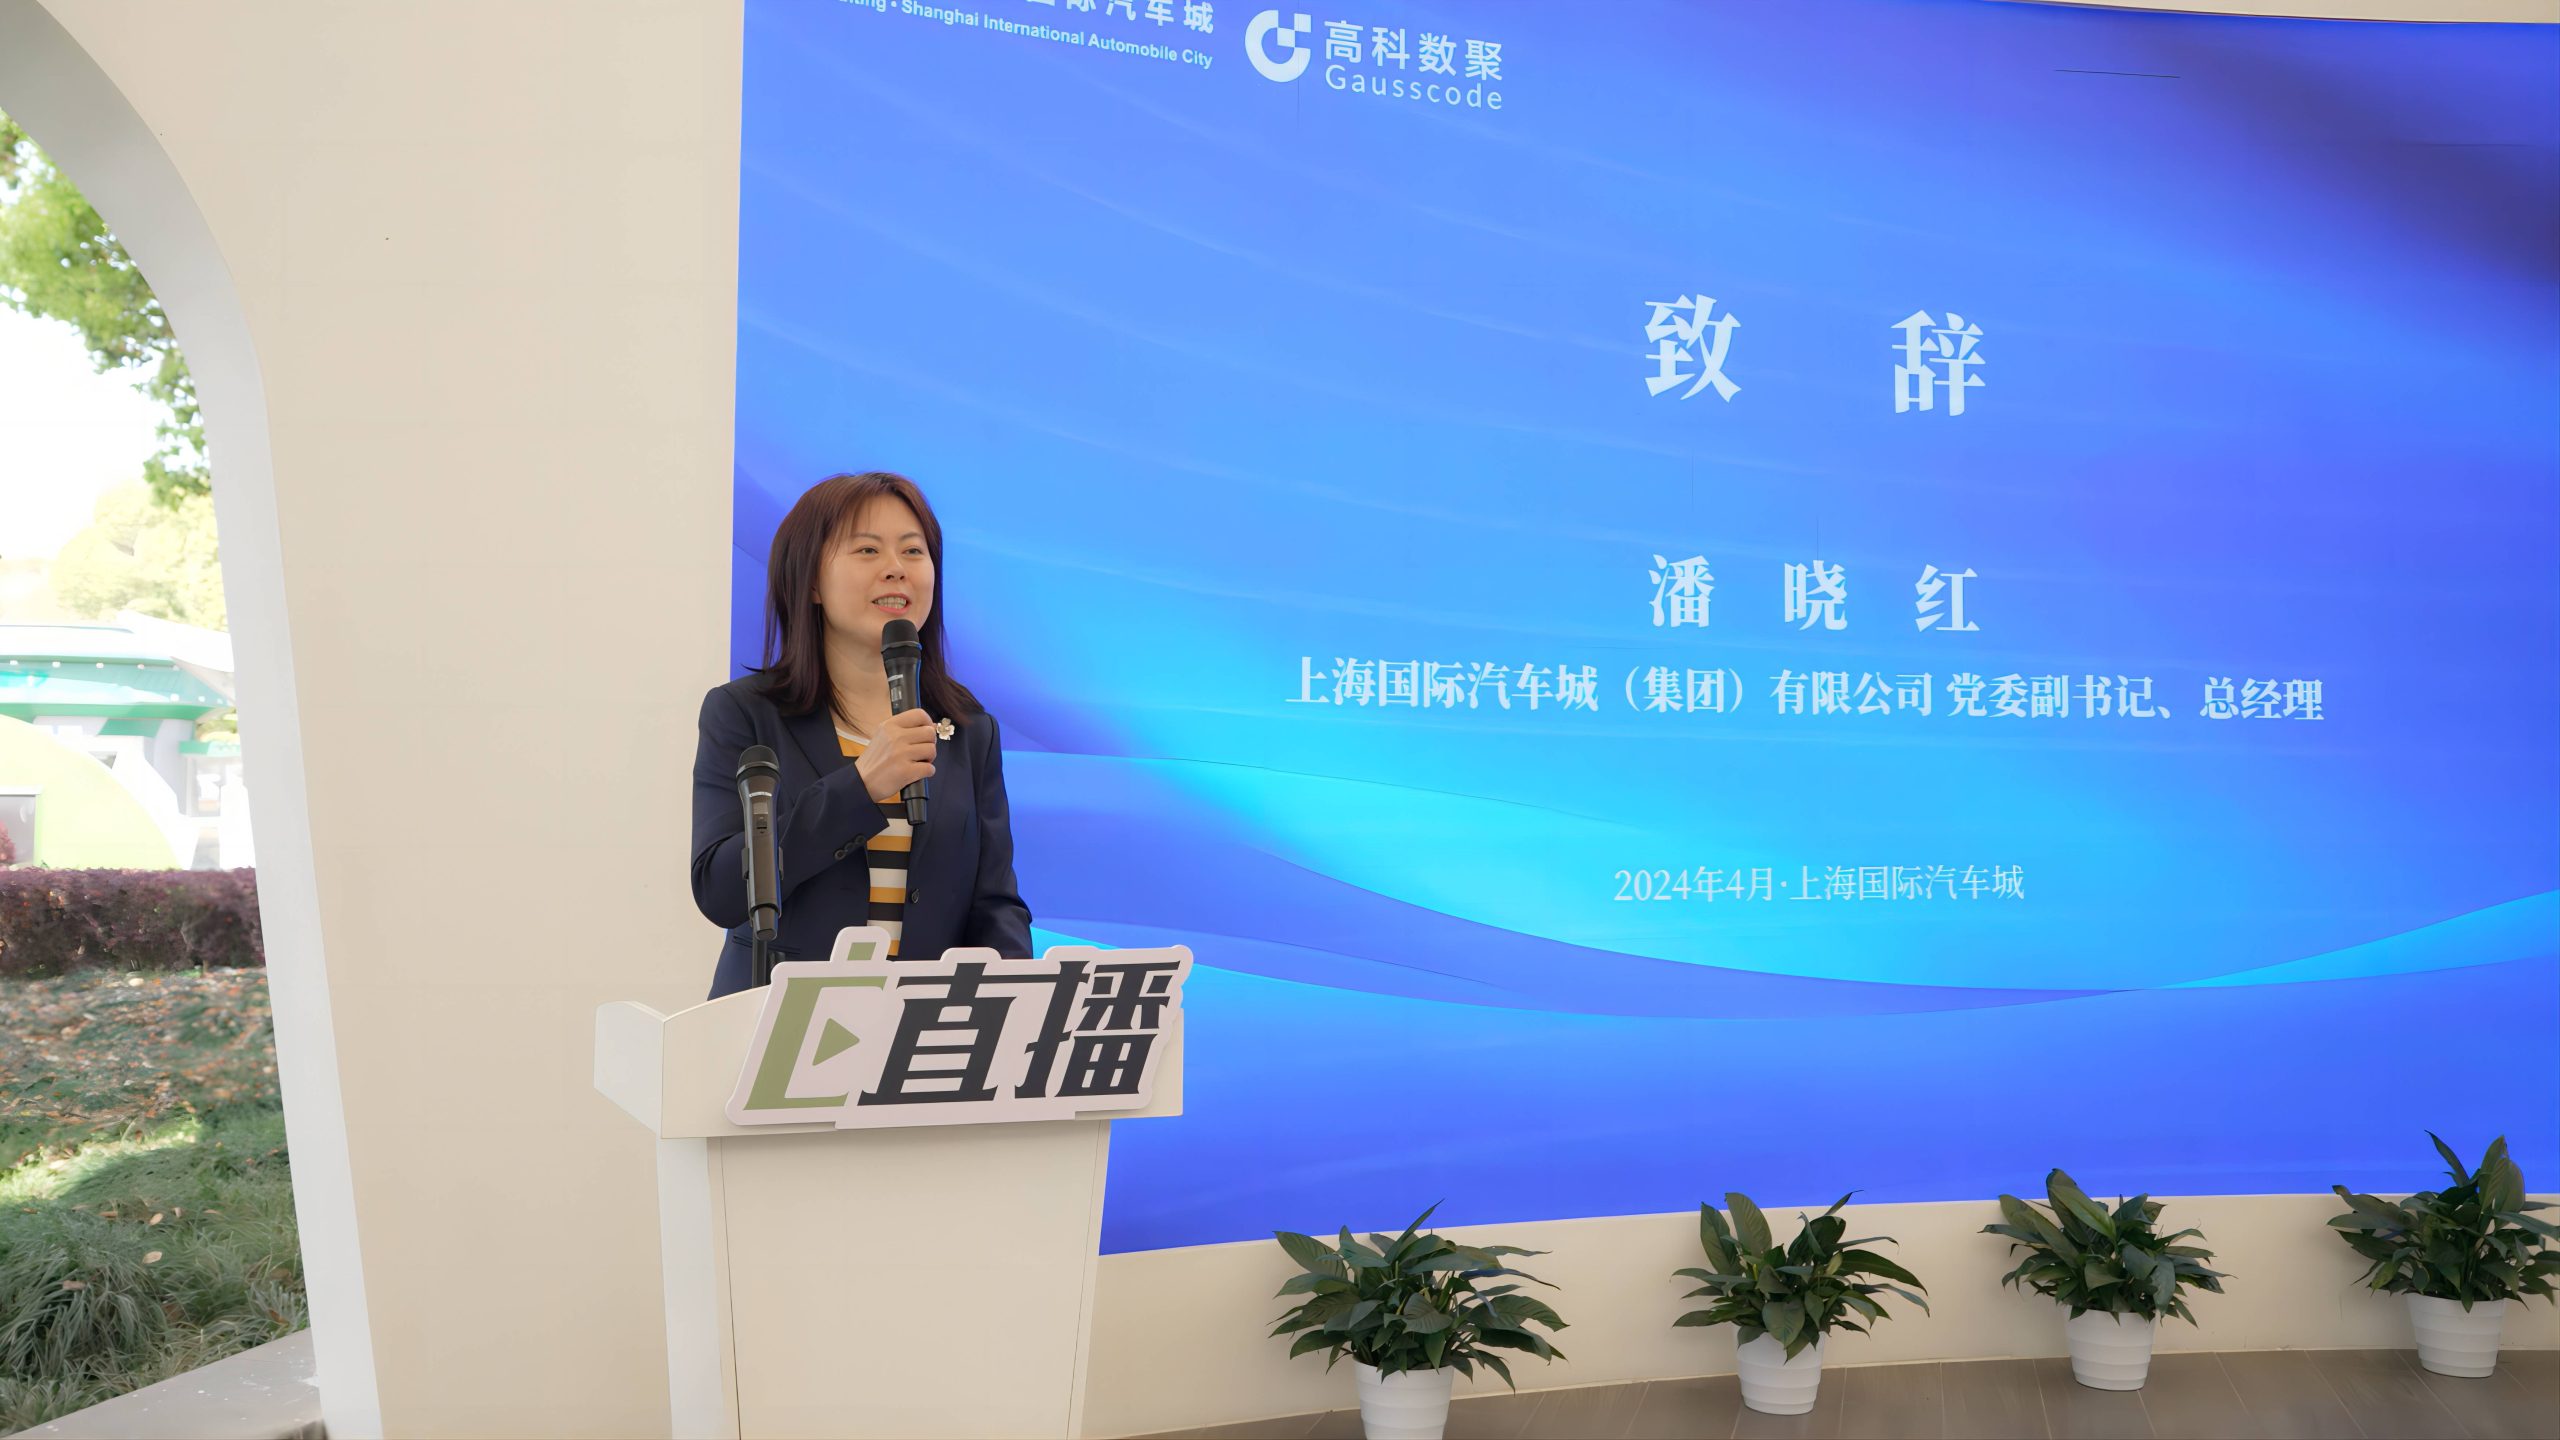 上海国际汽车城建立全国首个综合性新能源汽车直播基地-公闻财经